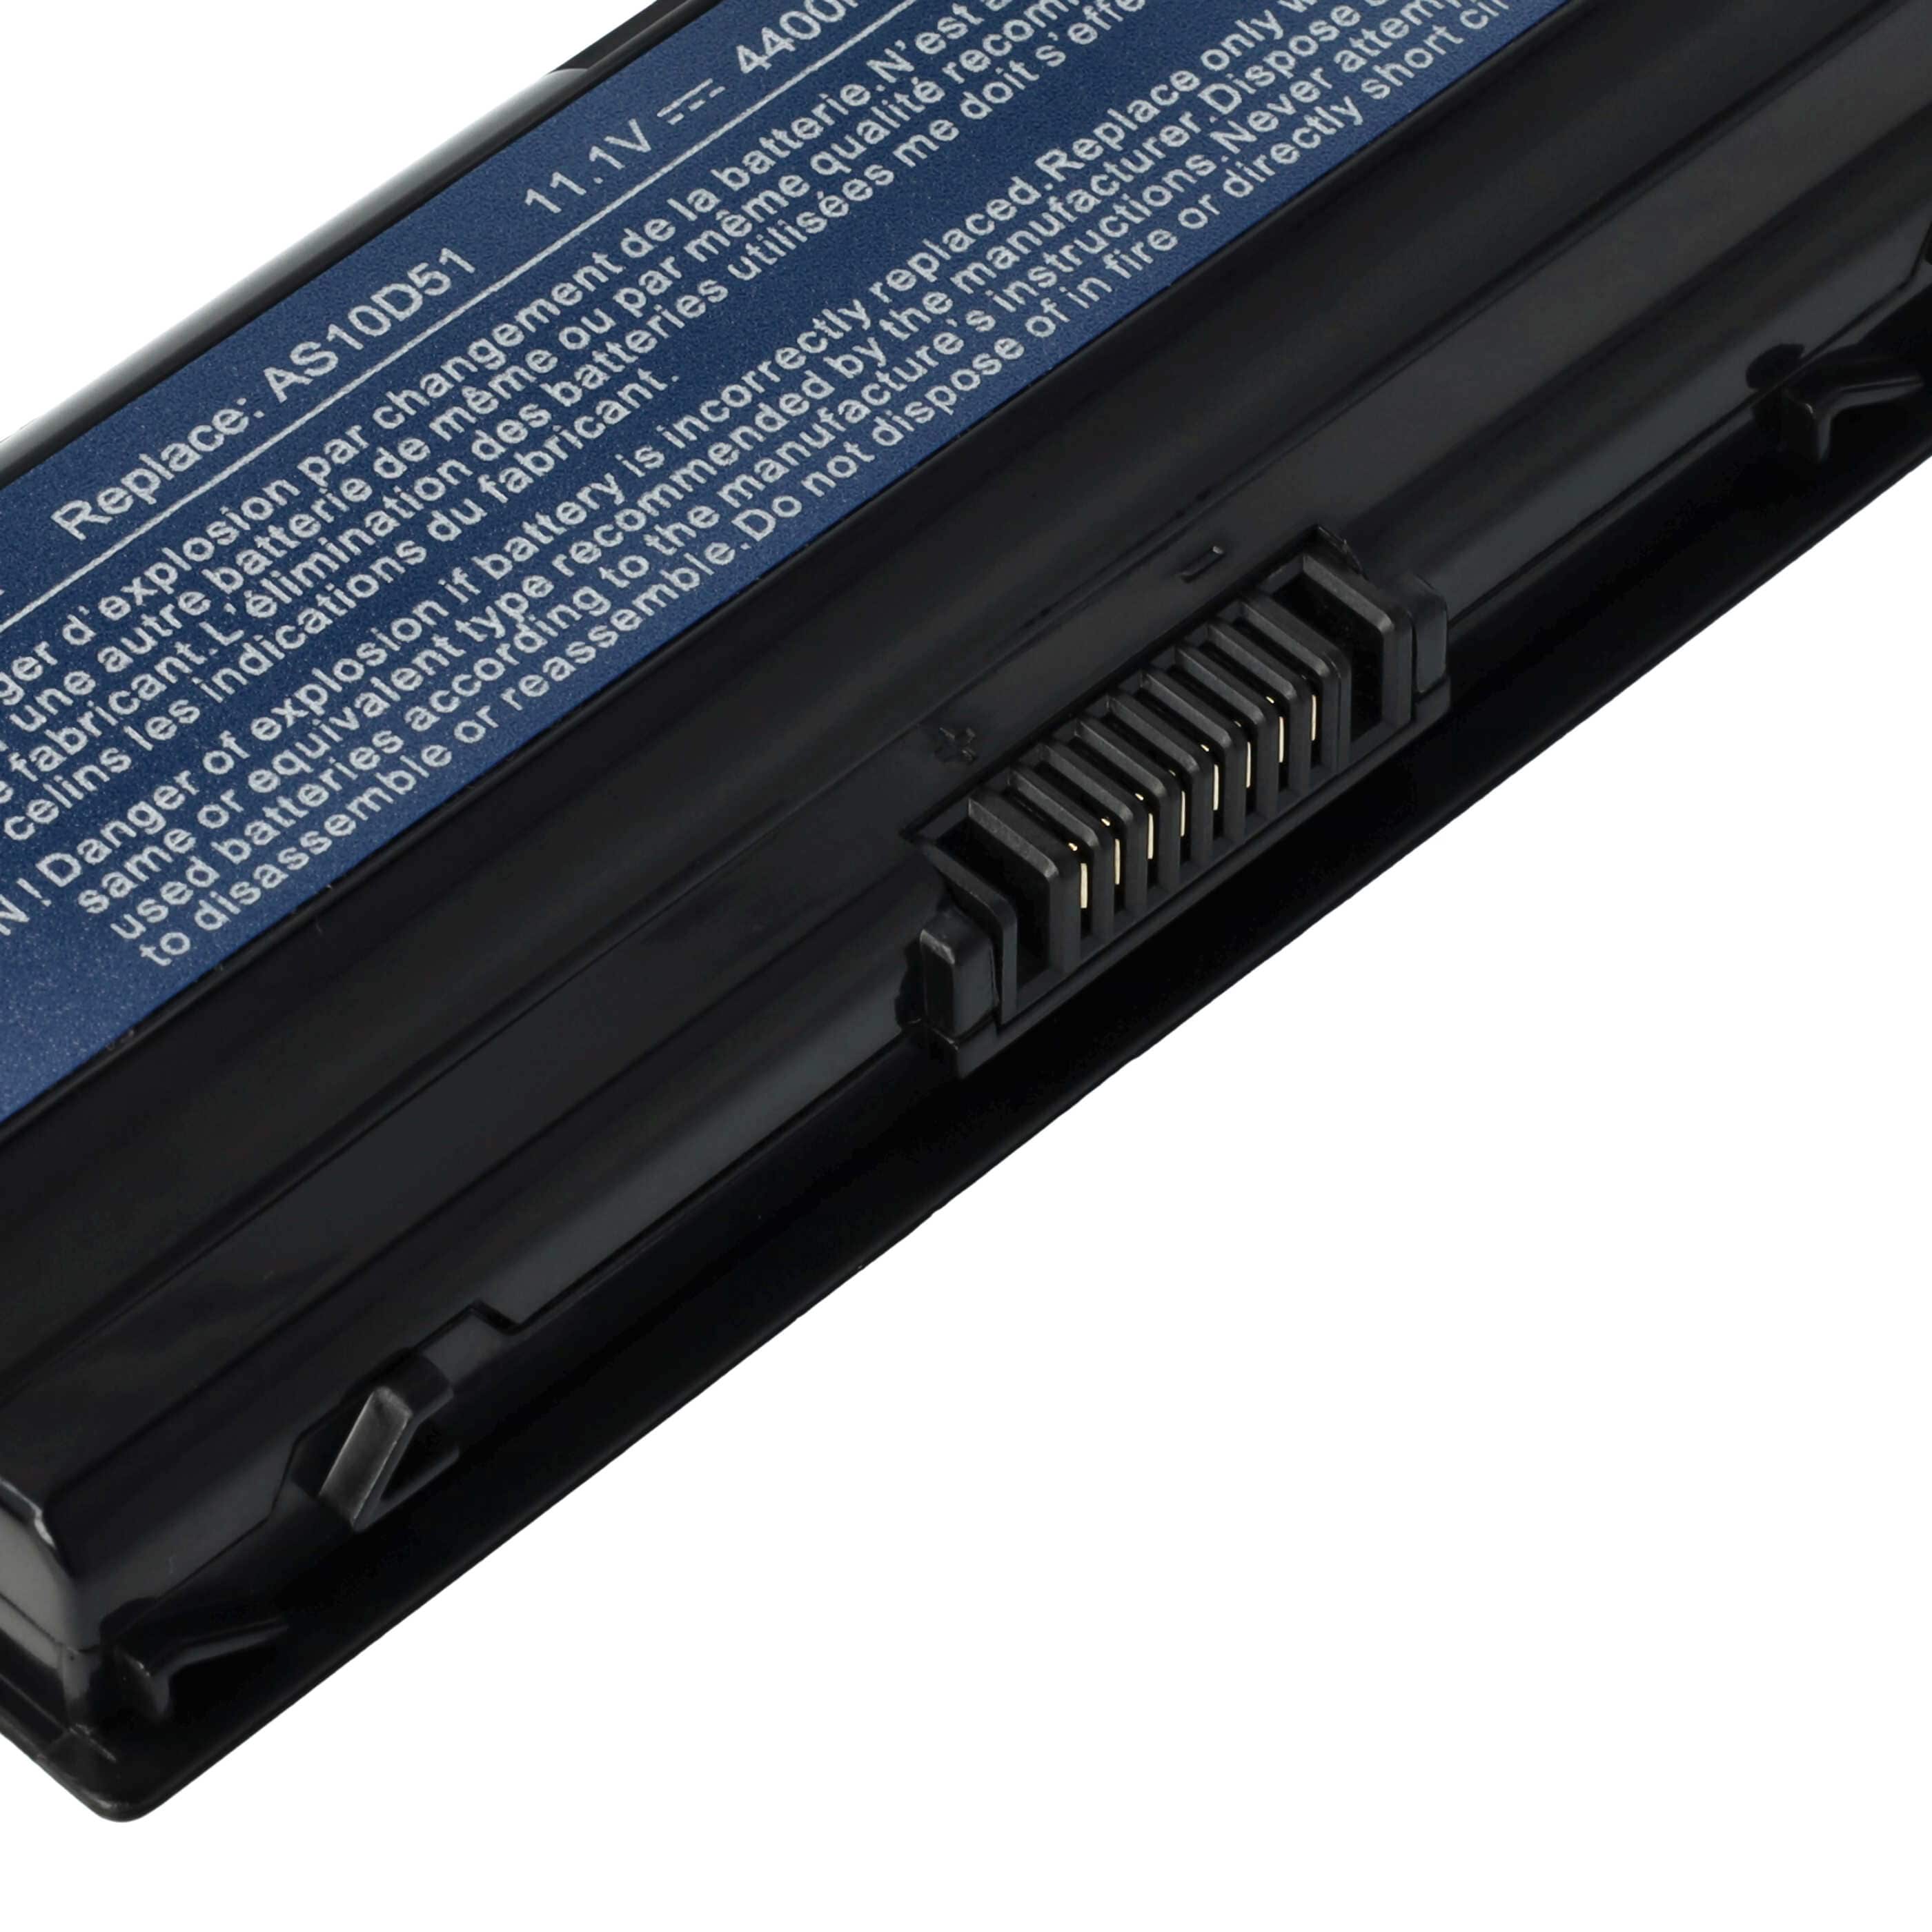 Batterie pour Acer Aspire 7741G, 7750G, V3-771G ordinateur portable - 4400mAh 11,1V Li-ion, noir